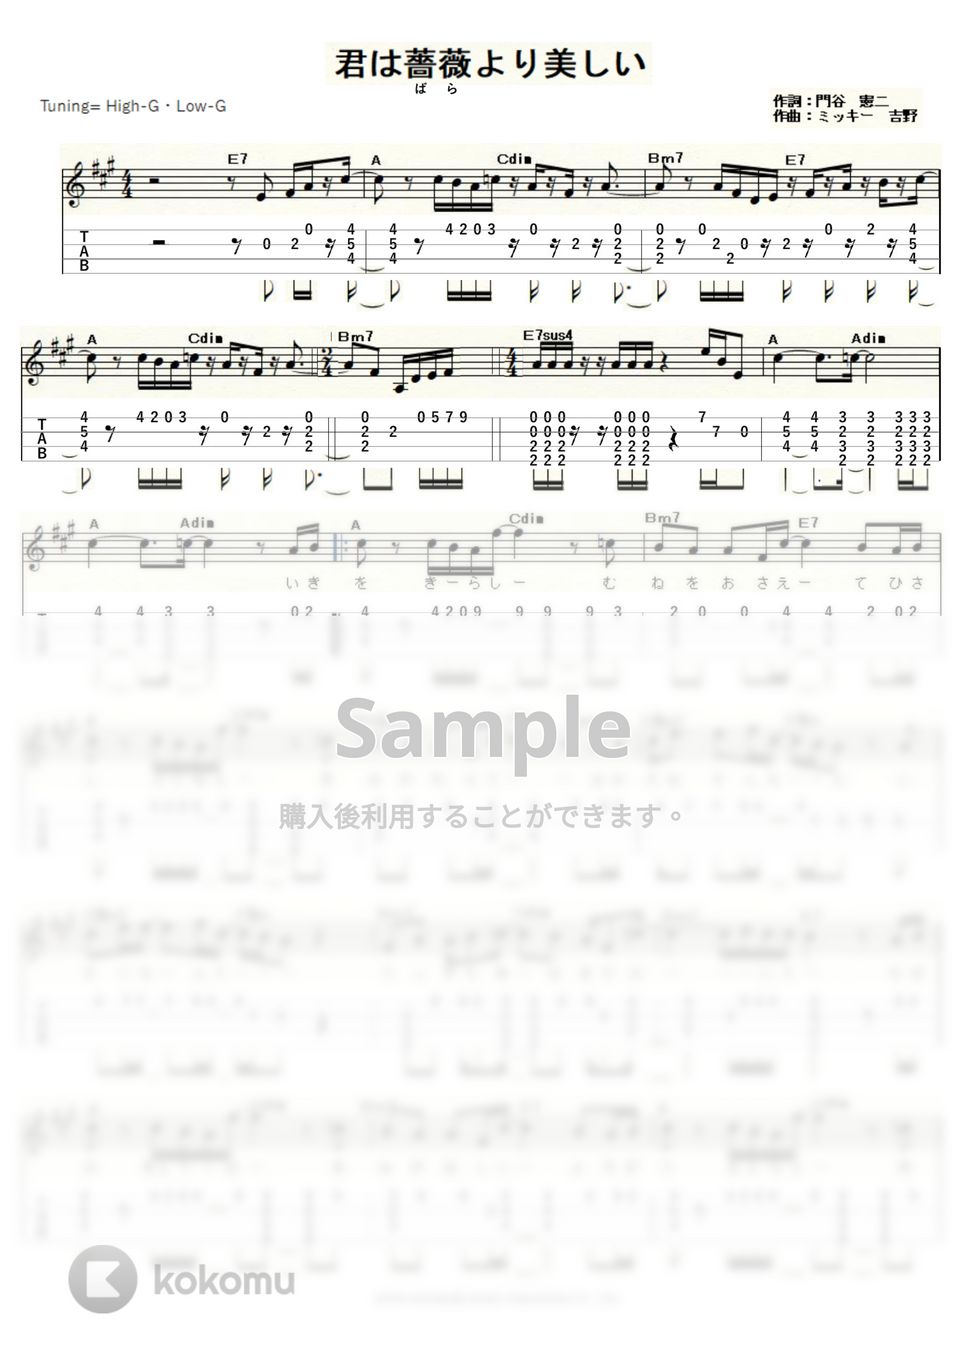 布施　明 - 君は薔薇より美しい (ｳｸﾚﾚｿﾛ / High-G・Low-G / 中級～上級) by ukulelepapa